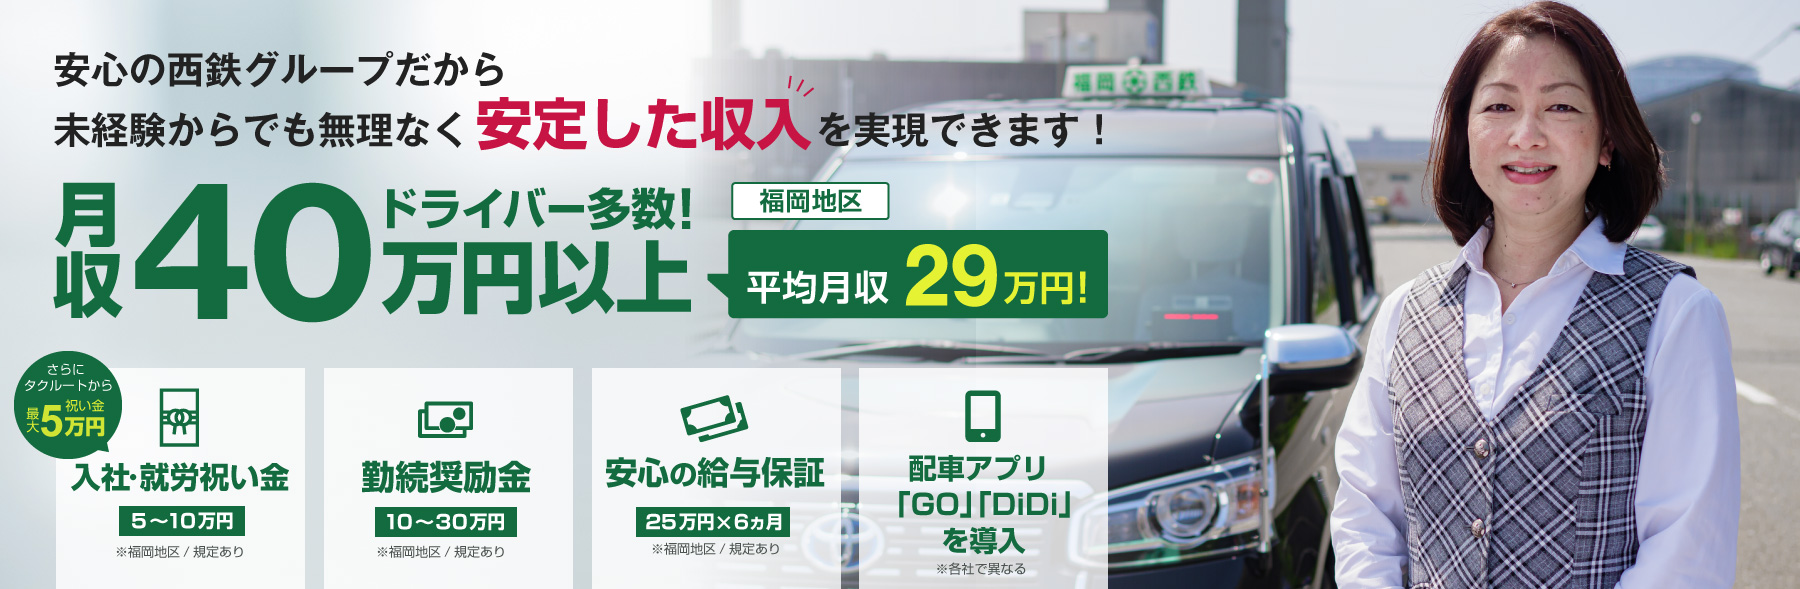 福岡西鉄タクシーのタクシー乗務員募集